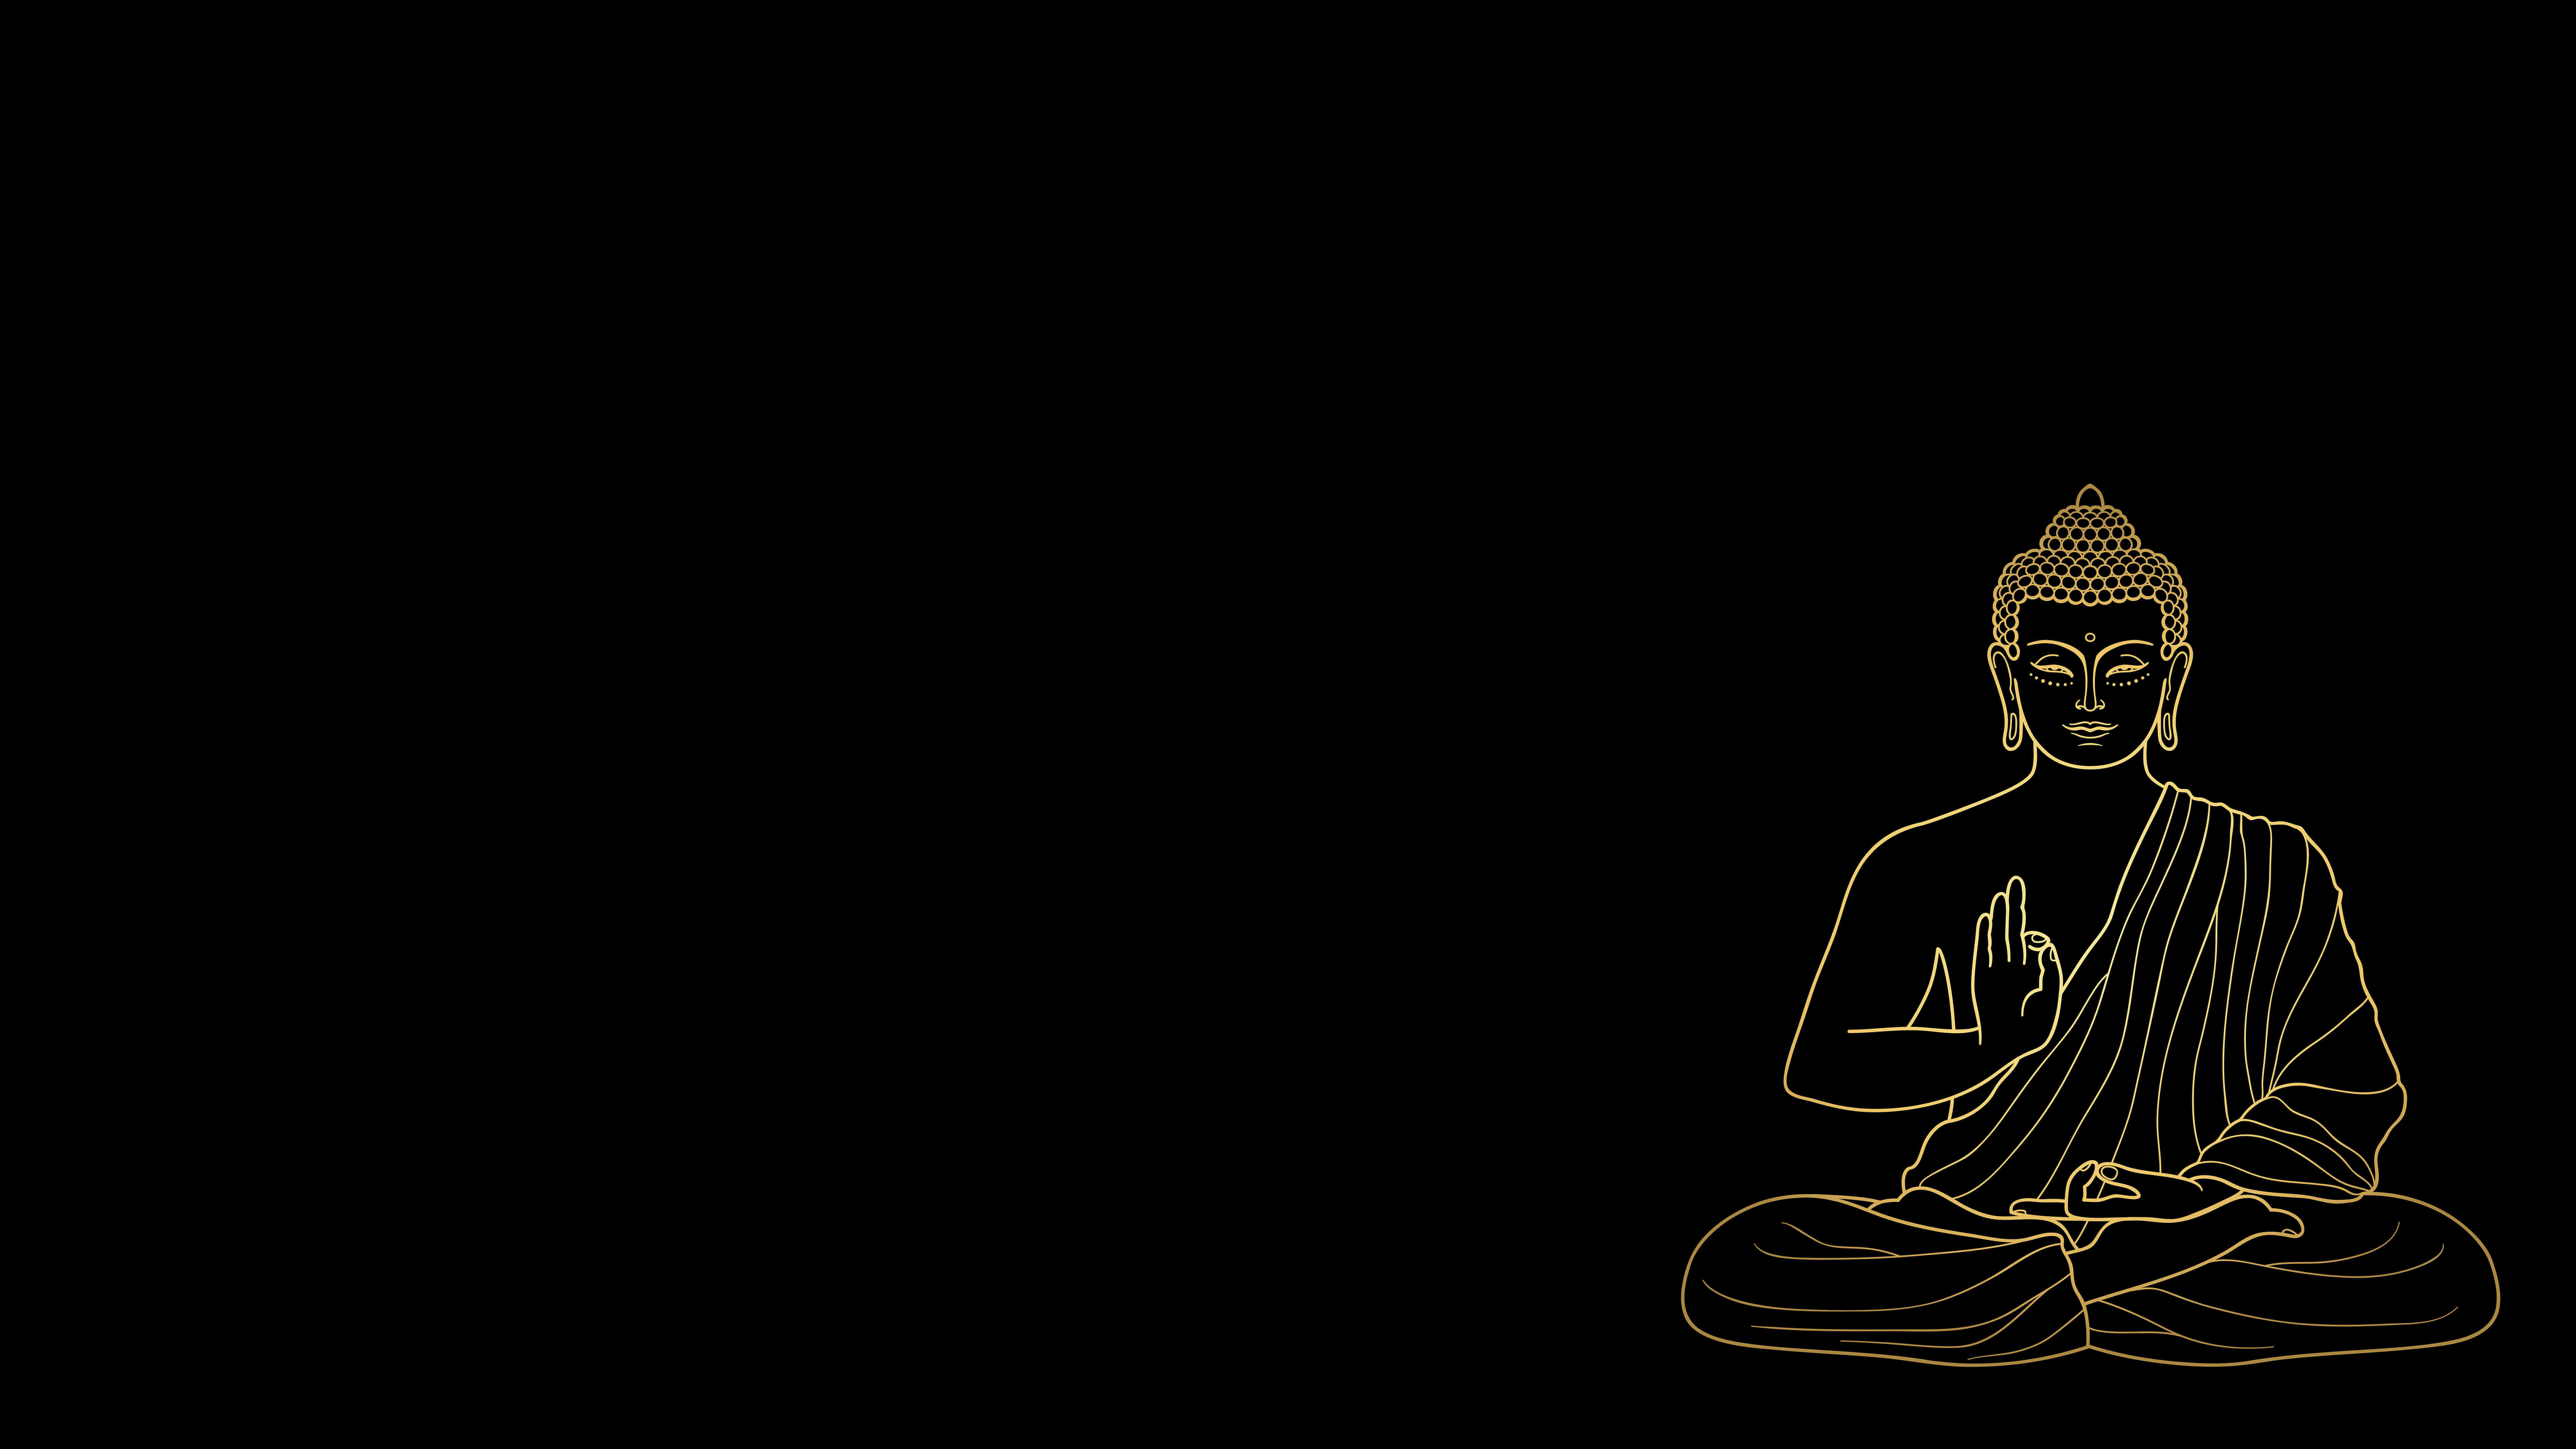 Buddha Meditating UHD 8K Wallpaper - Pixelz.cc